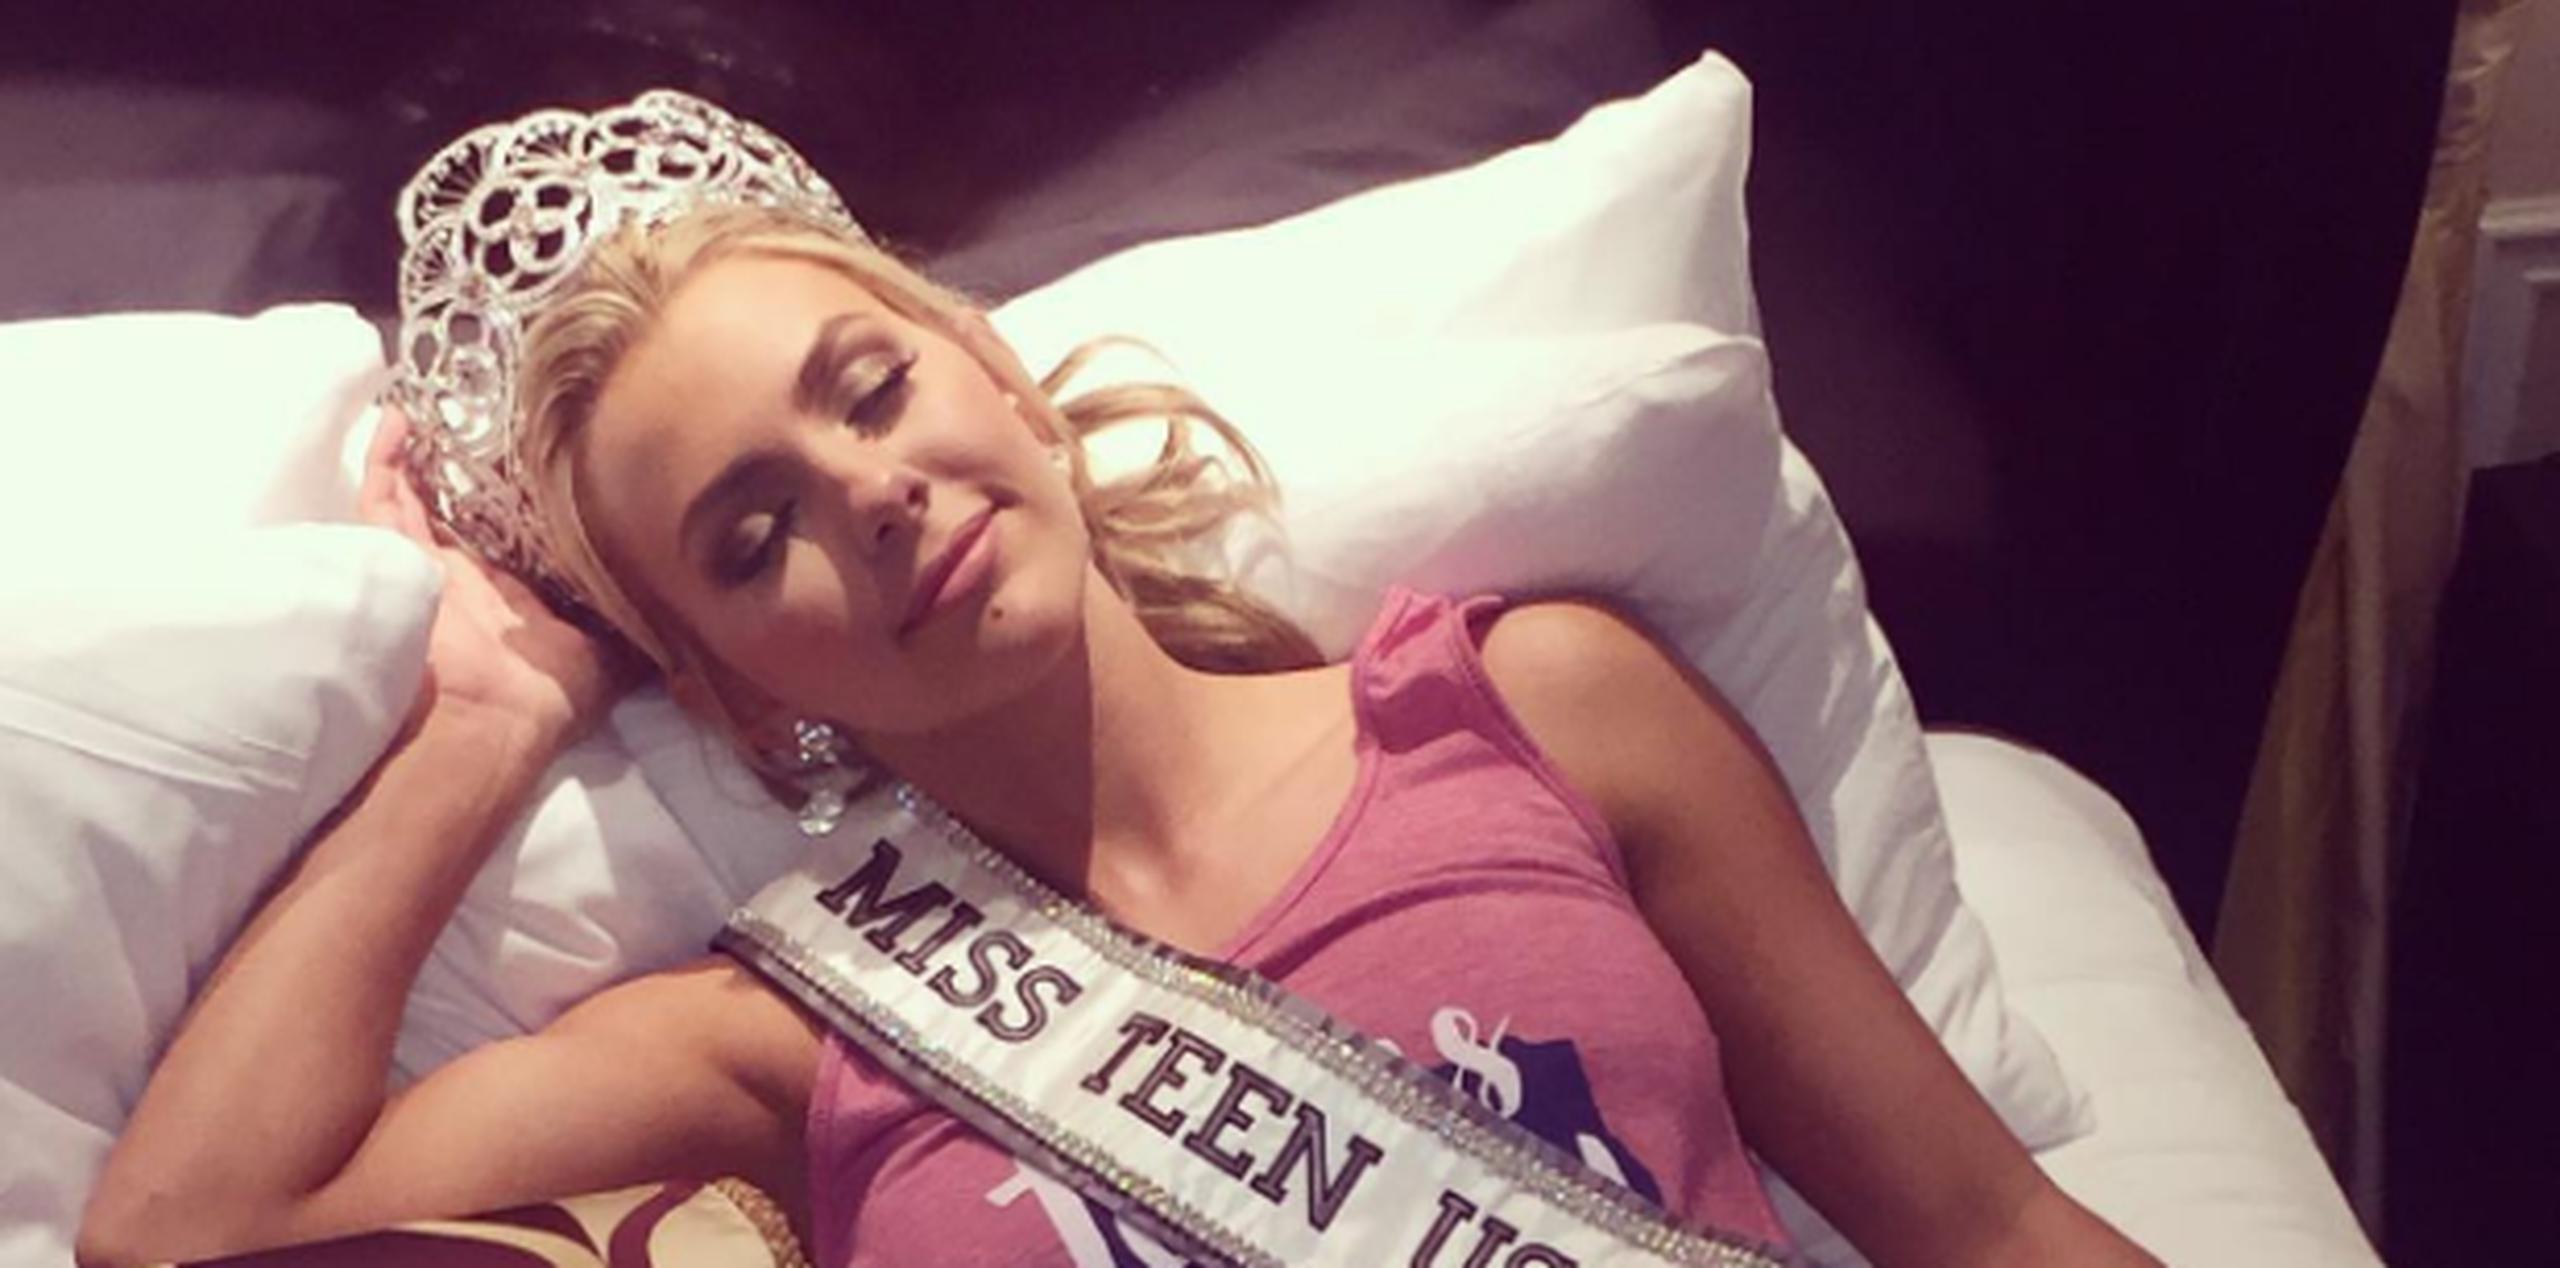 La organización de Miss Universe, que es dueña del certamen de adolescentes, condenó los tuits de Hay a través de un comunicado. (Instagram)